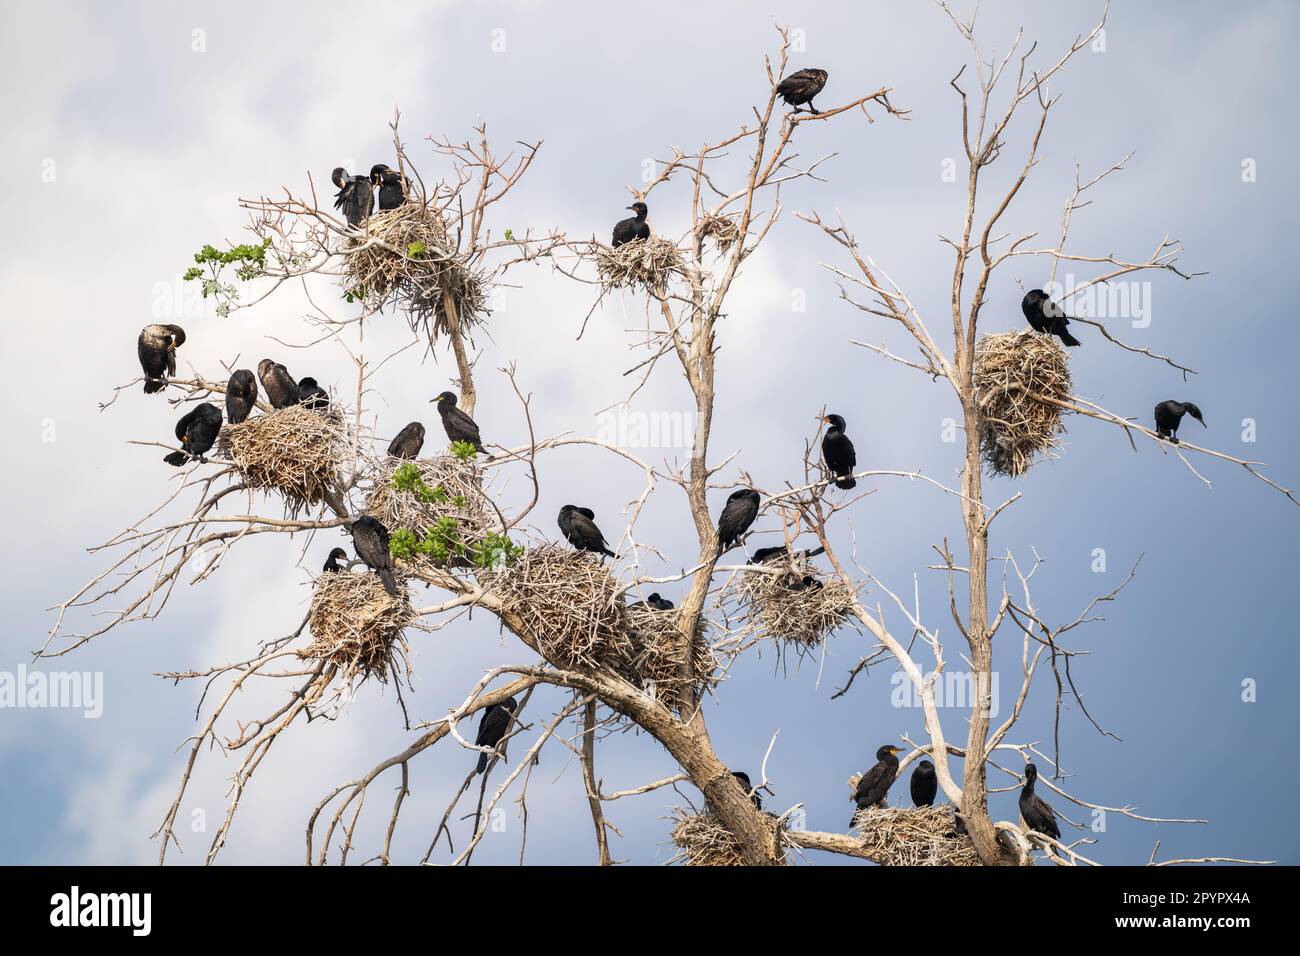 Kormoranvögel mit Doppelkammmuscheln, die in einem großen Fang nisten, oder einem toten Baum, mit Nestern, die überall verstreut sind, vor einem hellblauen Himmel mit Wolken. Stockfoto